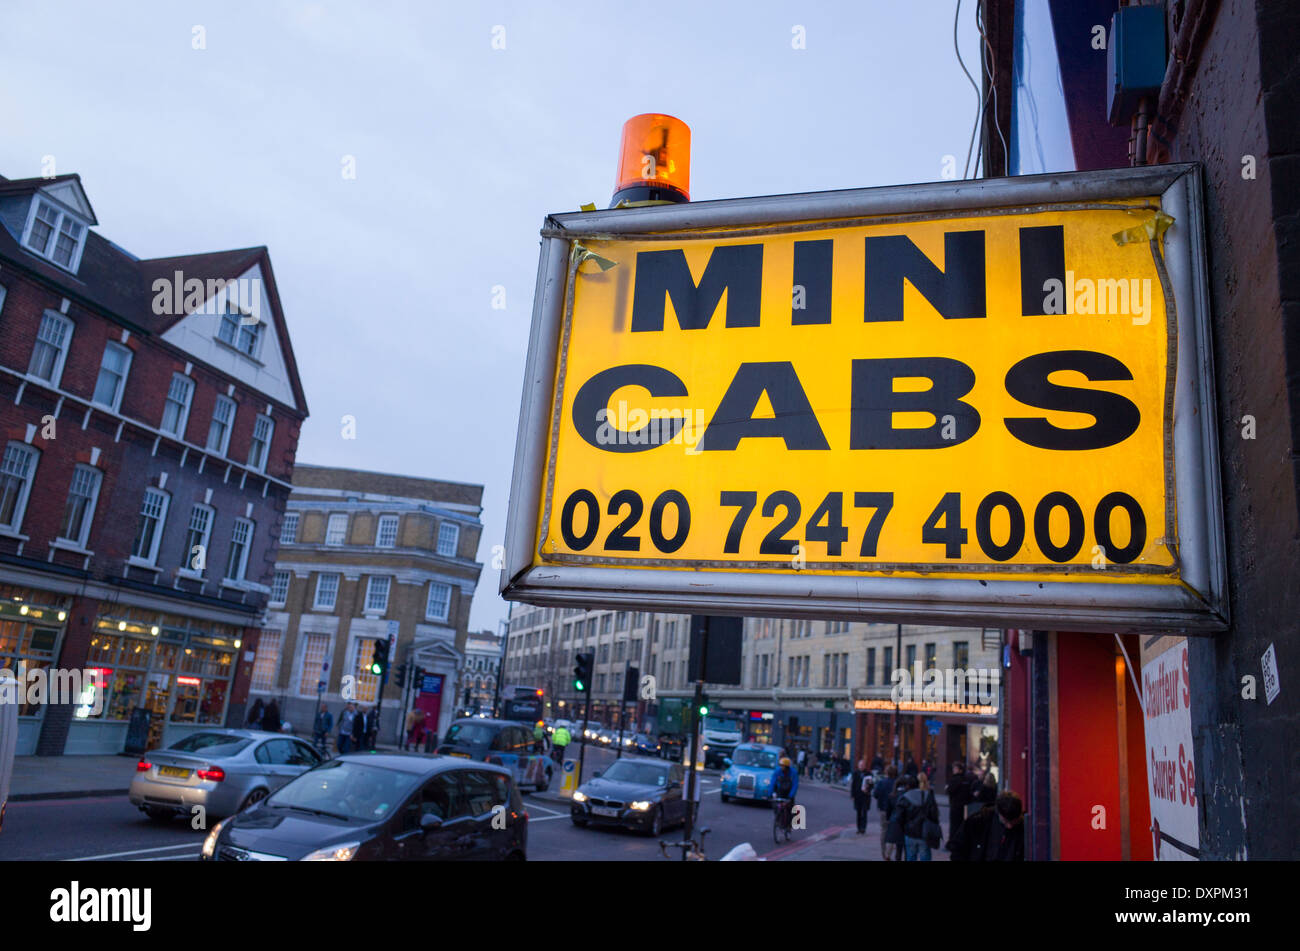 Mini cabs flashing orange light and sign, Spitalfields, London, England, UK Stock Photo